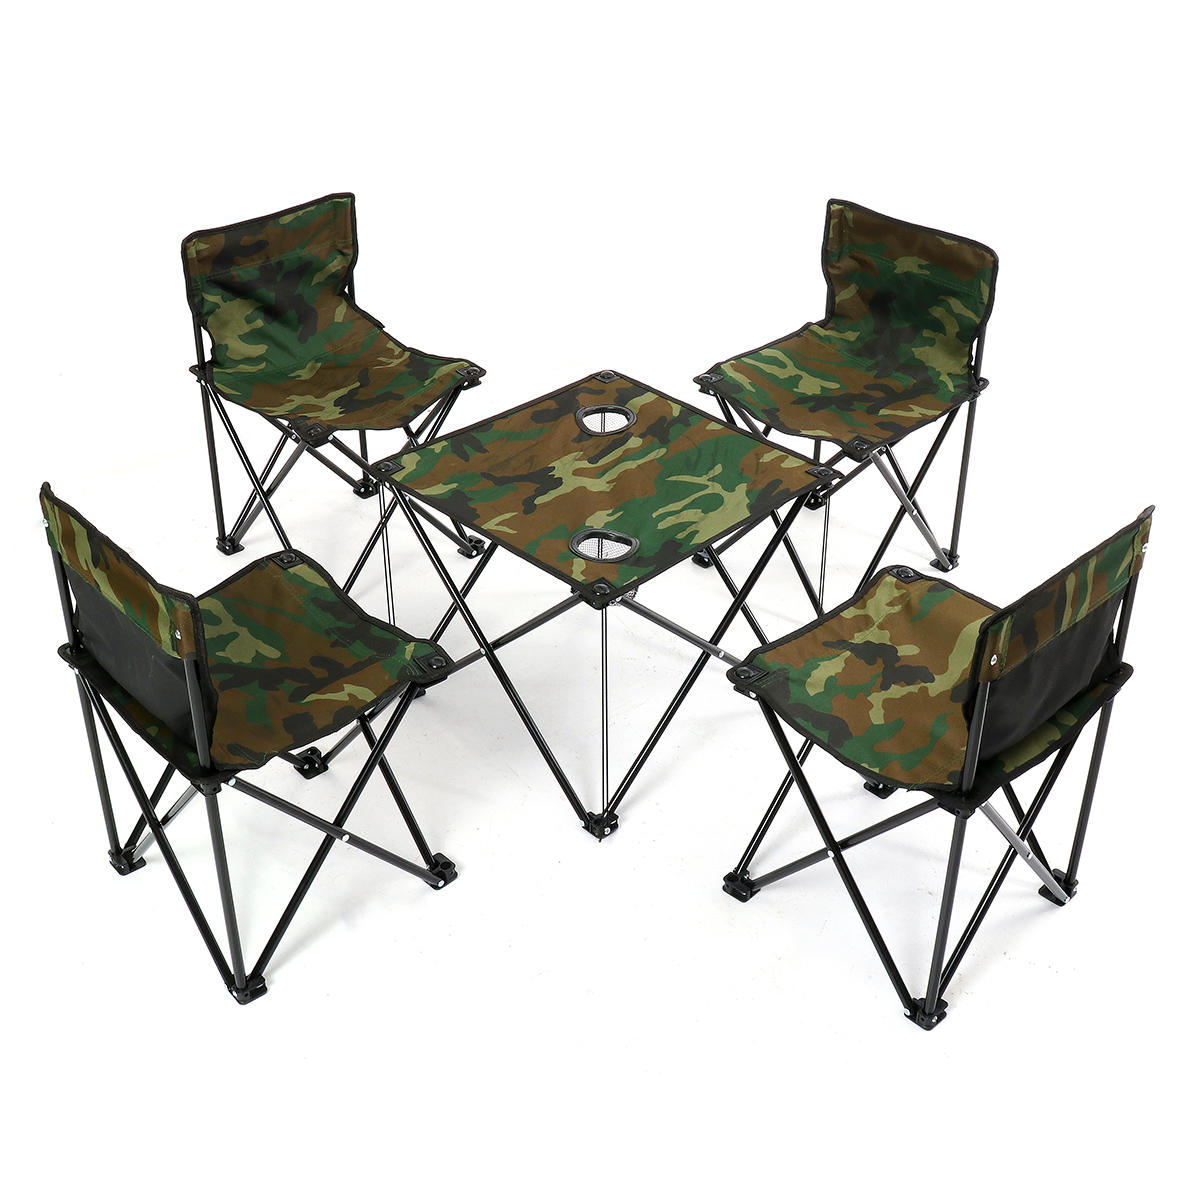 Tragbare Klappstuhl Tisch Schreibtisch Set mit Tragetasche für Camping, Sportveranstaltungen, Strand